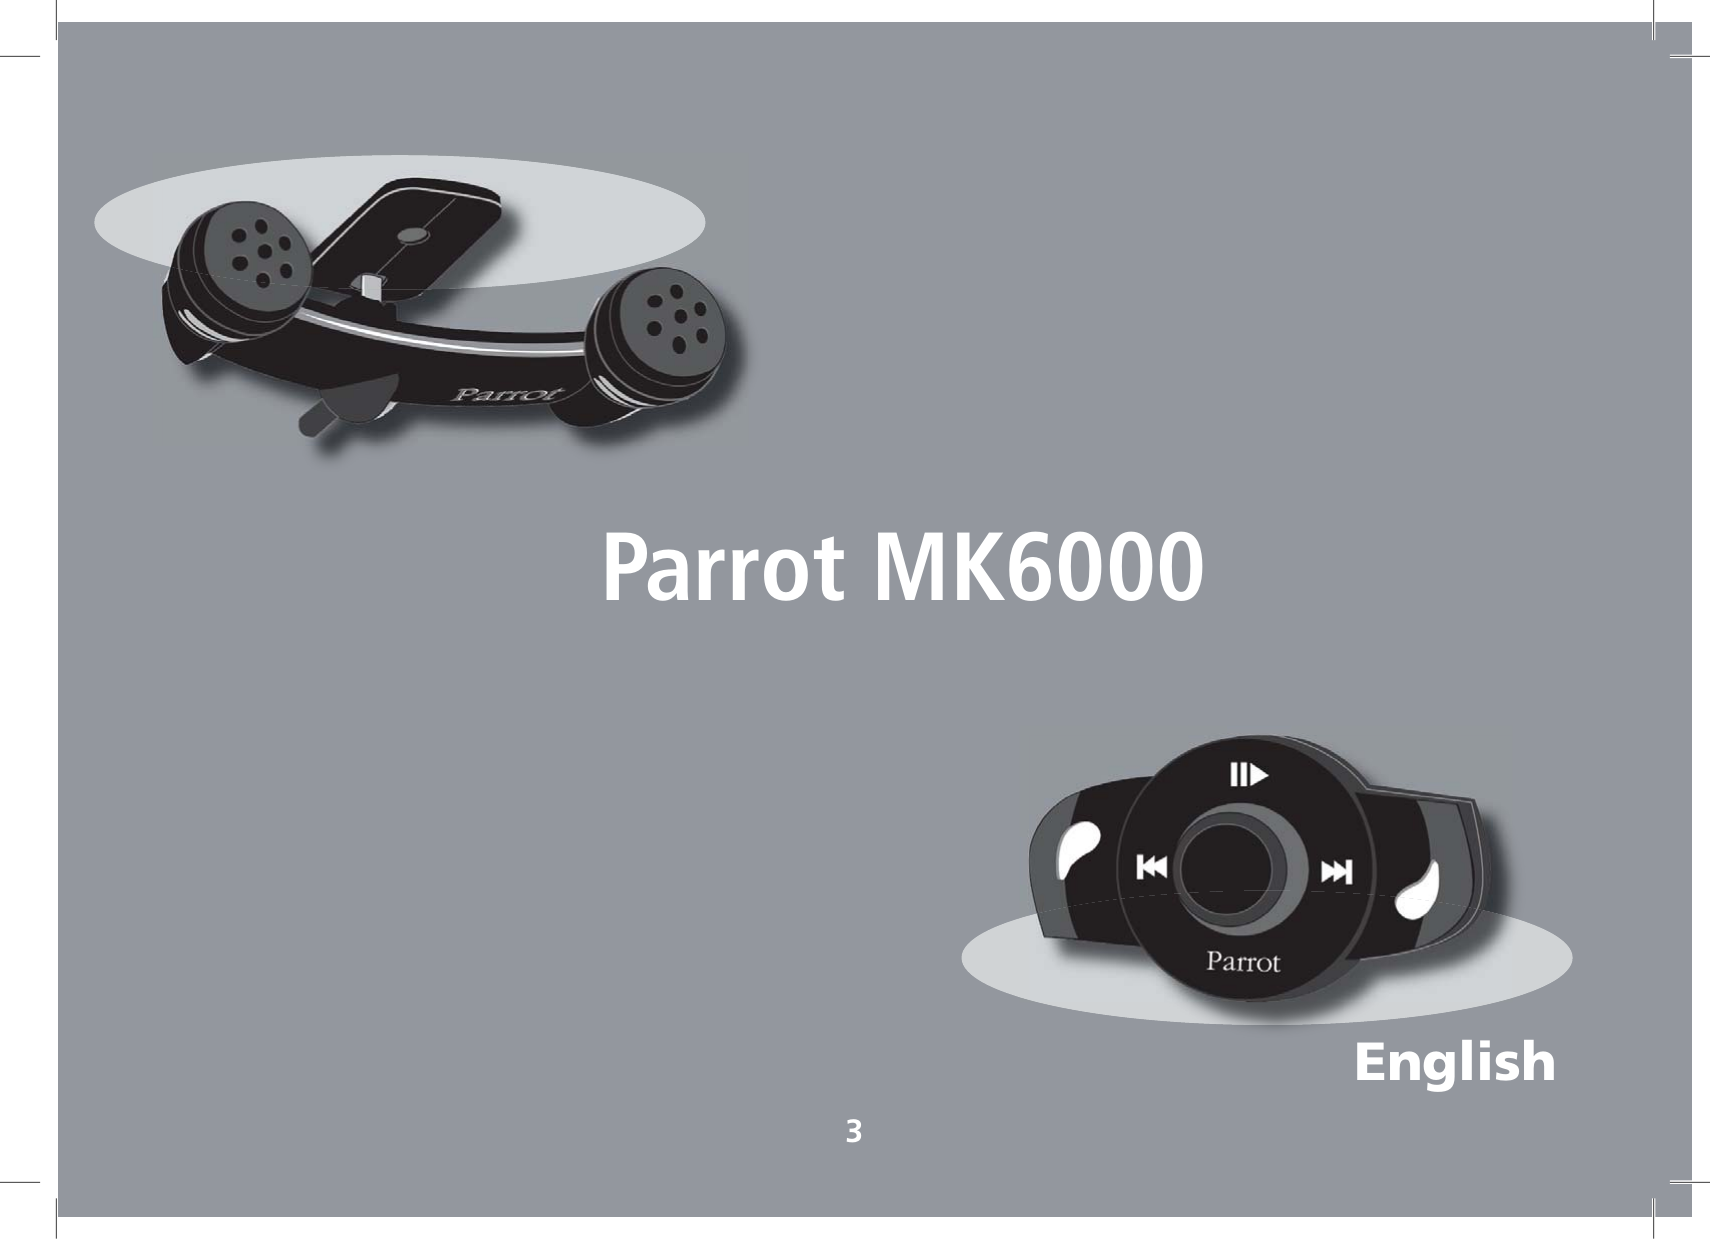 EnglishParrot MK60003